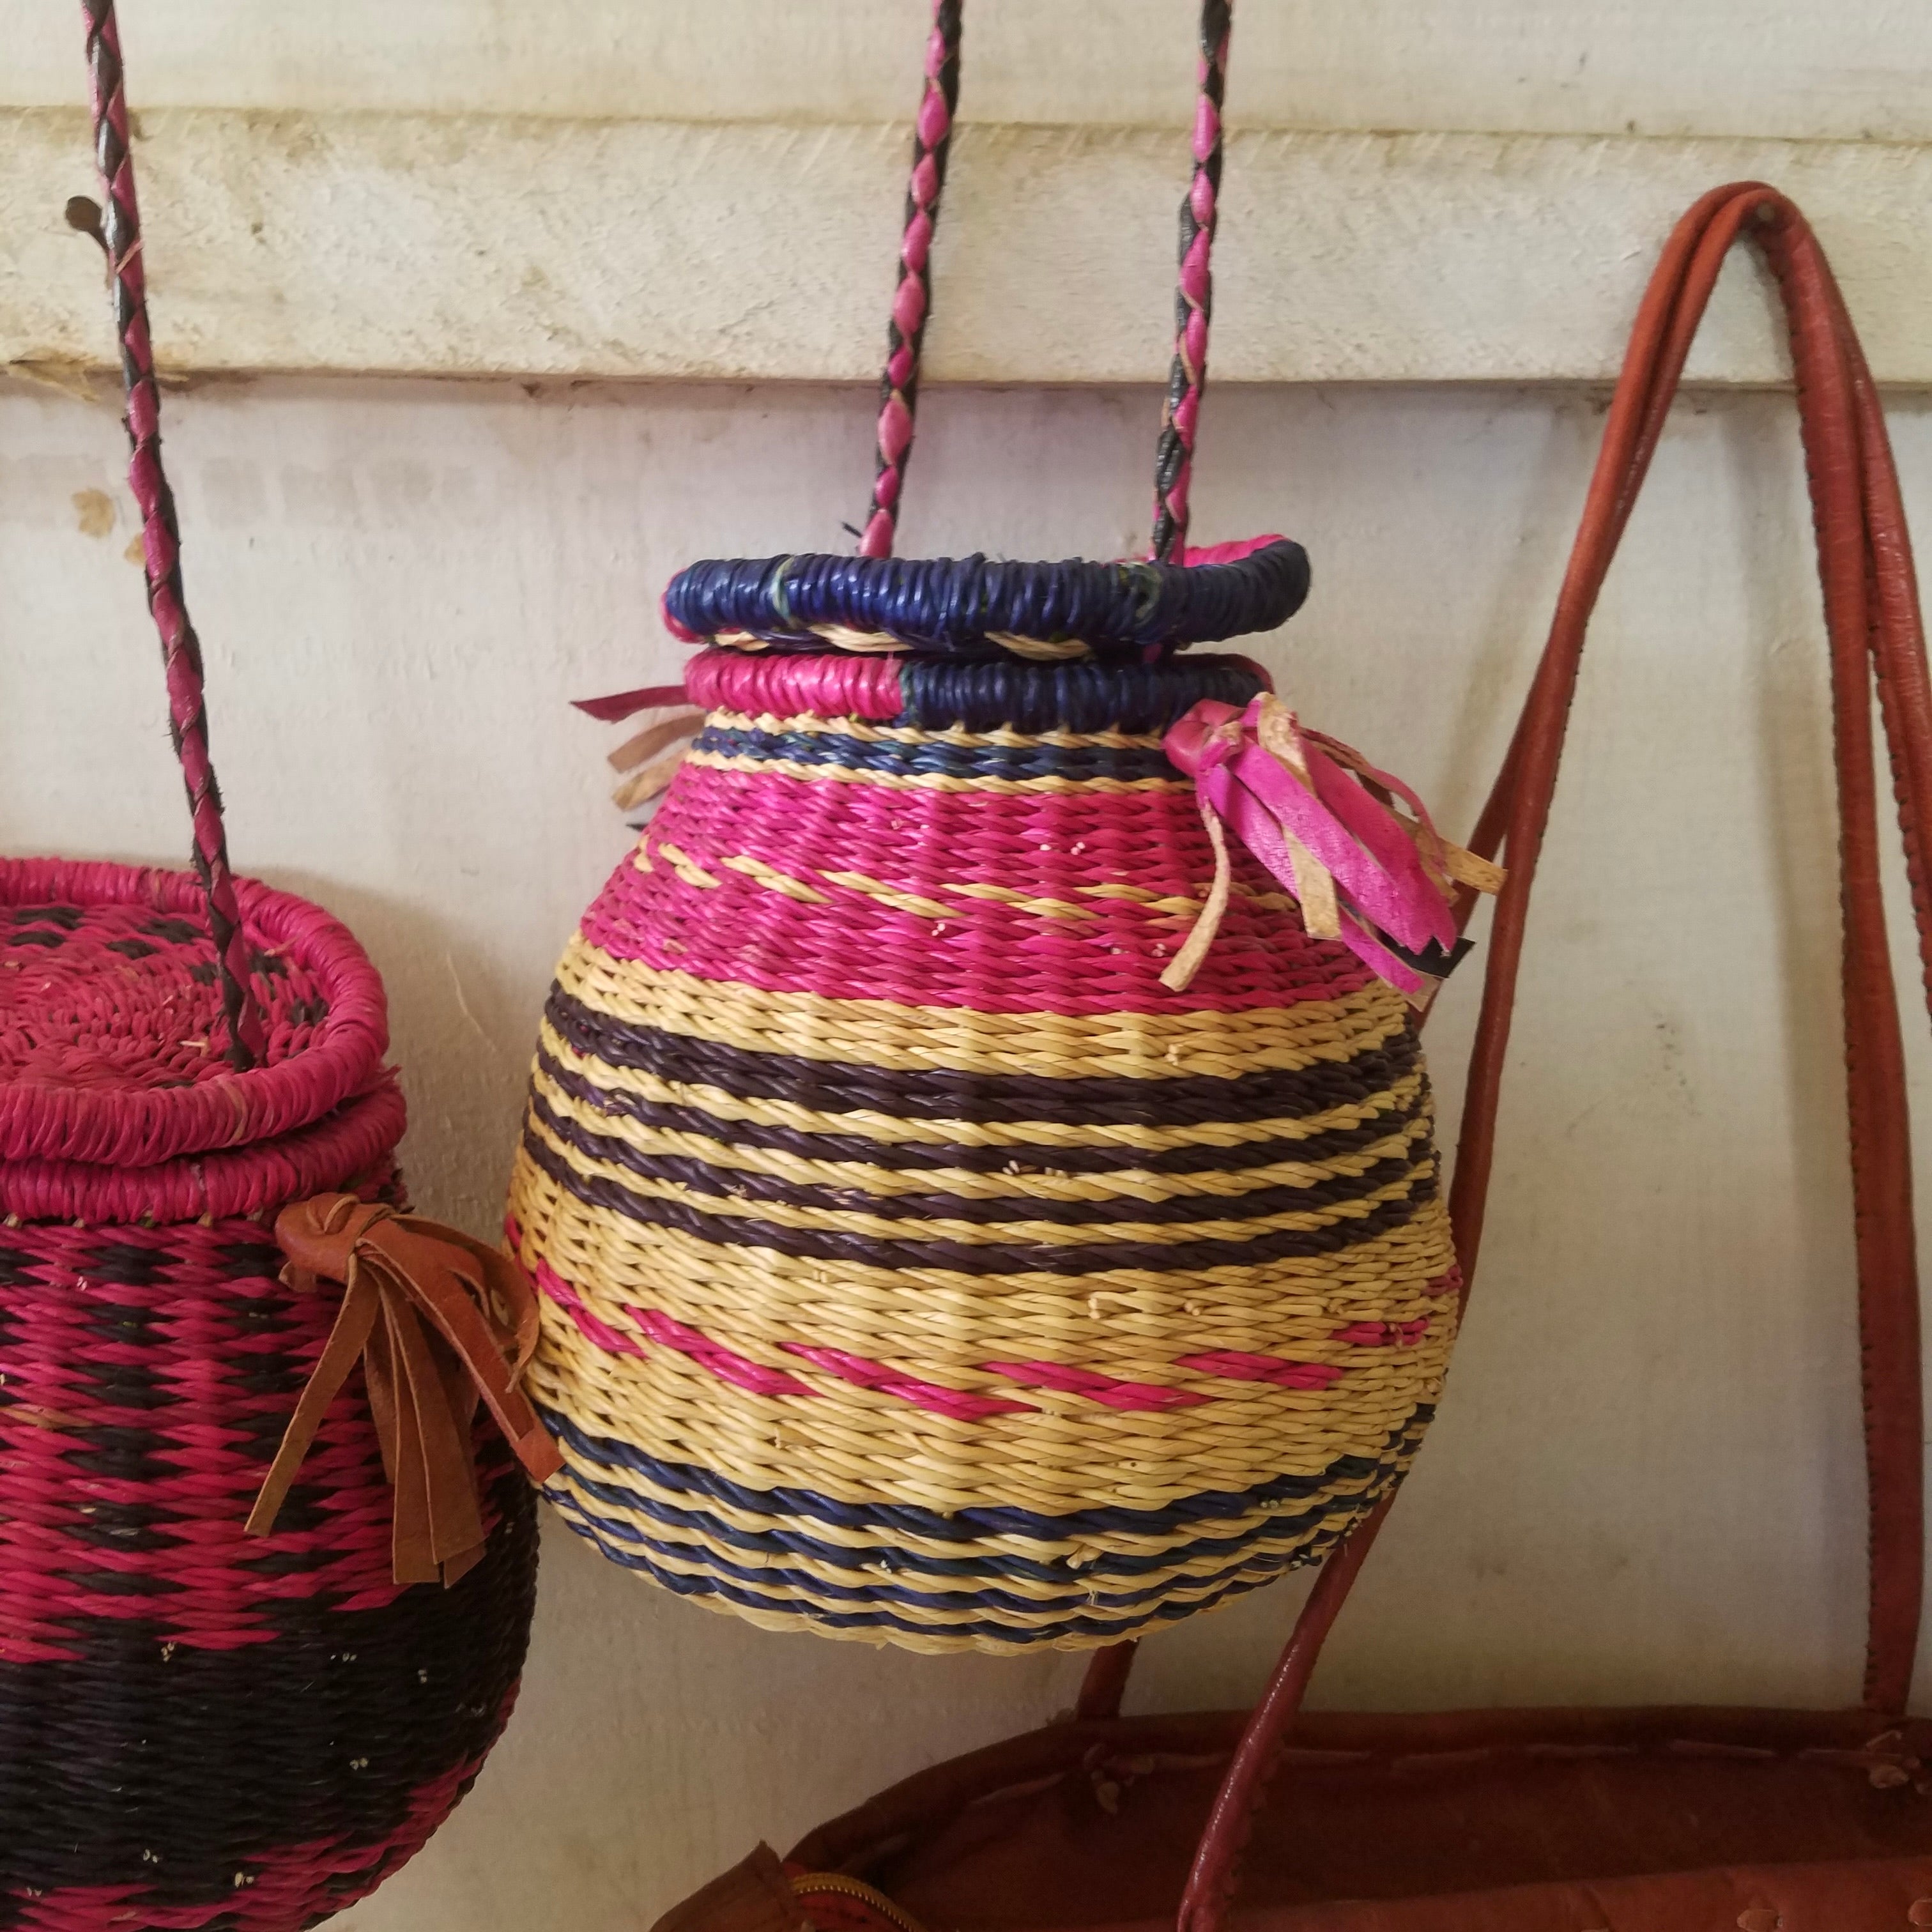 Bolgatanga Hand-Woven Items